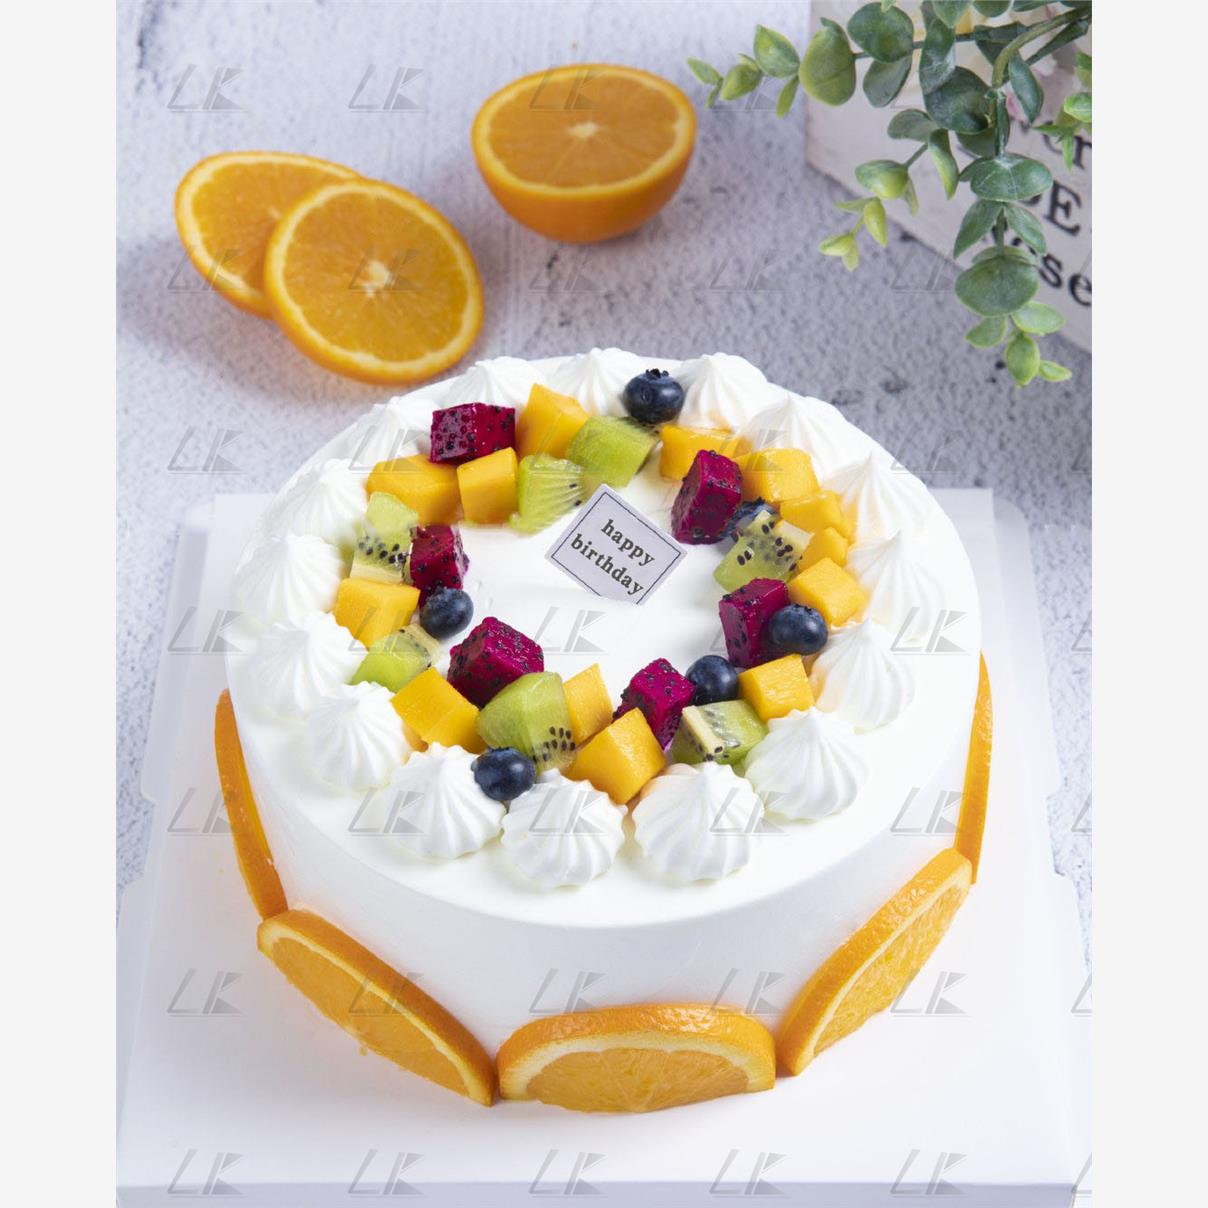 奶油水果蛋糕图片电子版素材生日蛋糕图册私房烘焙宣传海报效果图